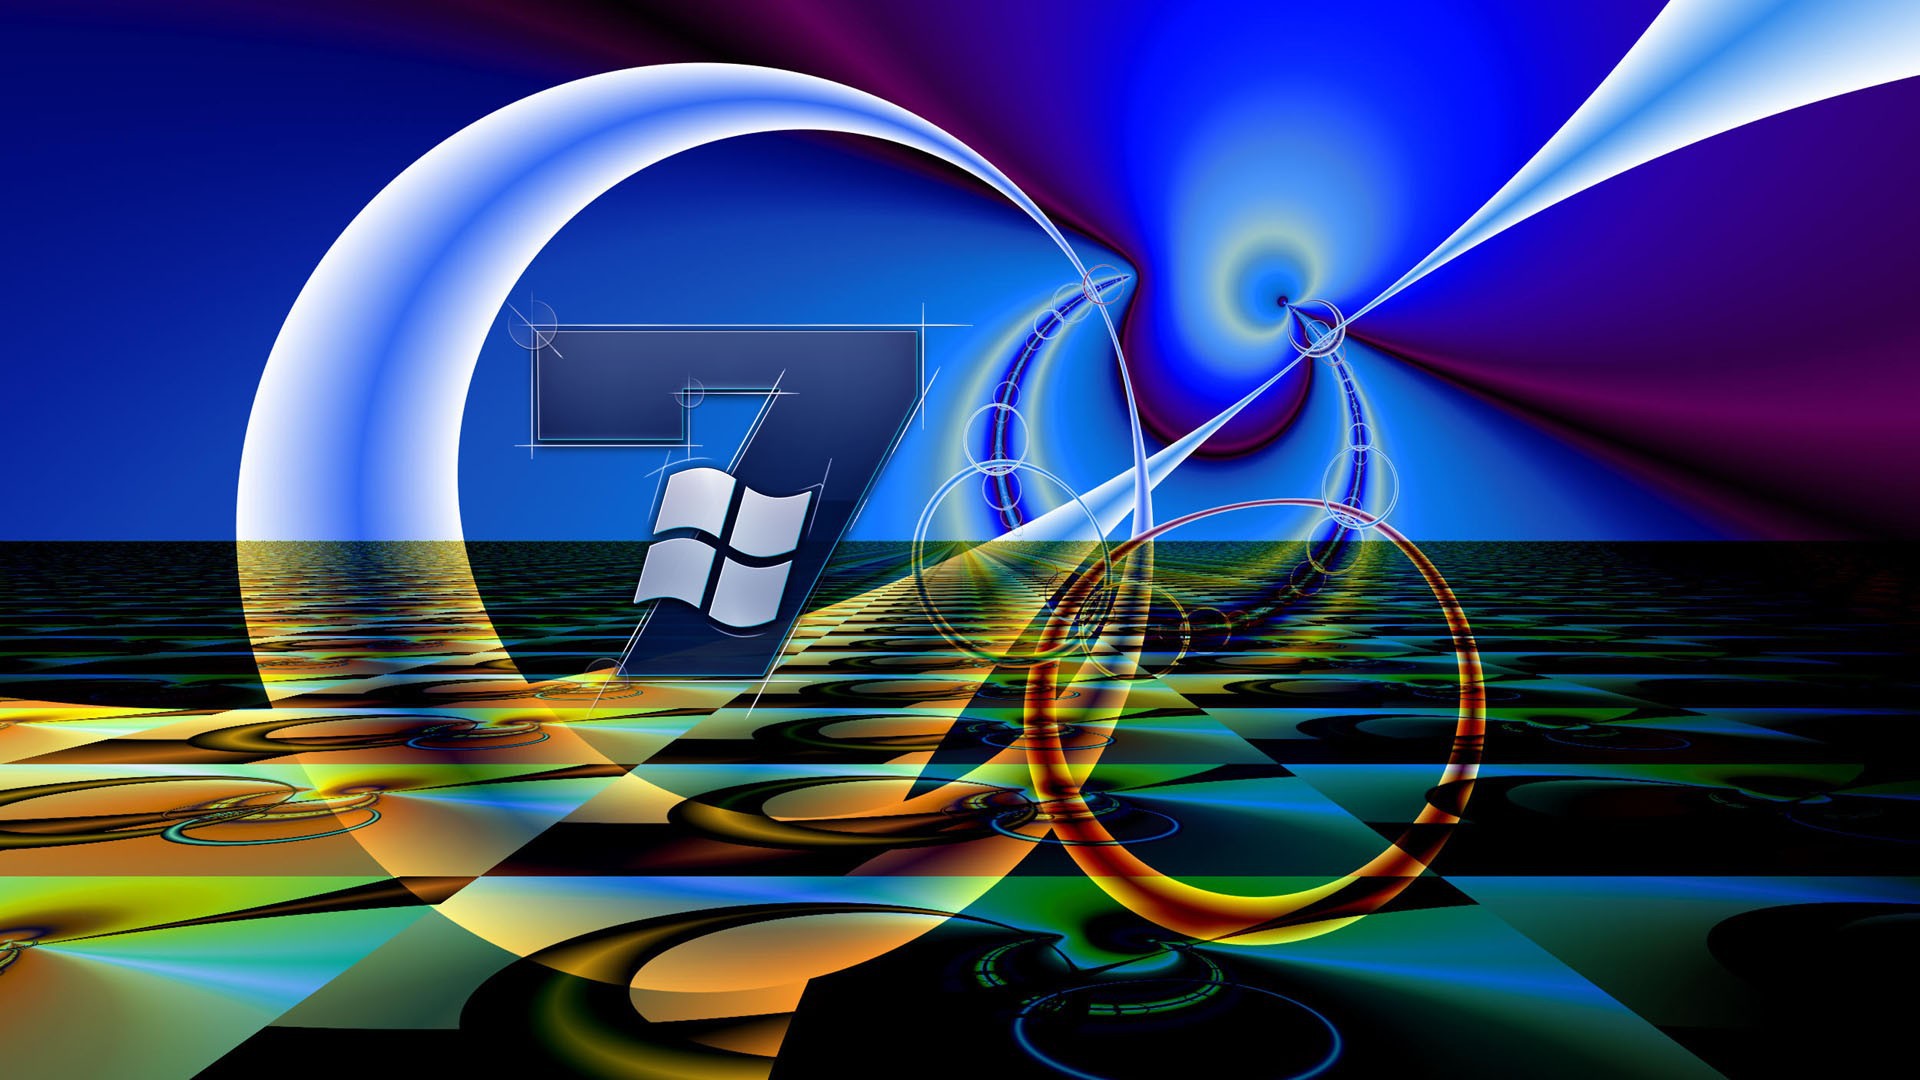 Tải ngay hình nền Windows 7 độ phân giải cao để tối ưu hóa sự trải nghiệm của bạn trên màn hình máy tính. Với bộ sưu tập hình nền đa dạng của chúng tôi, bạn có thể thỏa sức lựa chọn những hình nền chất lượng cao, tuyệt đẹp và phù hợp với nhu cầu của bạn.